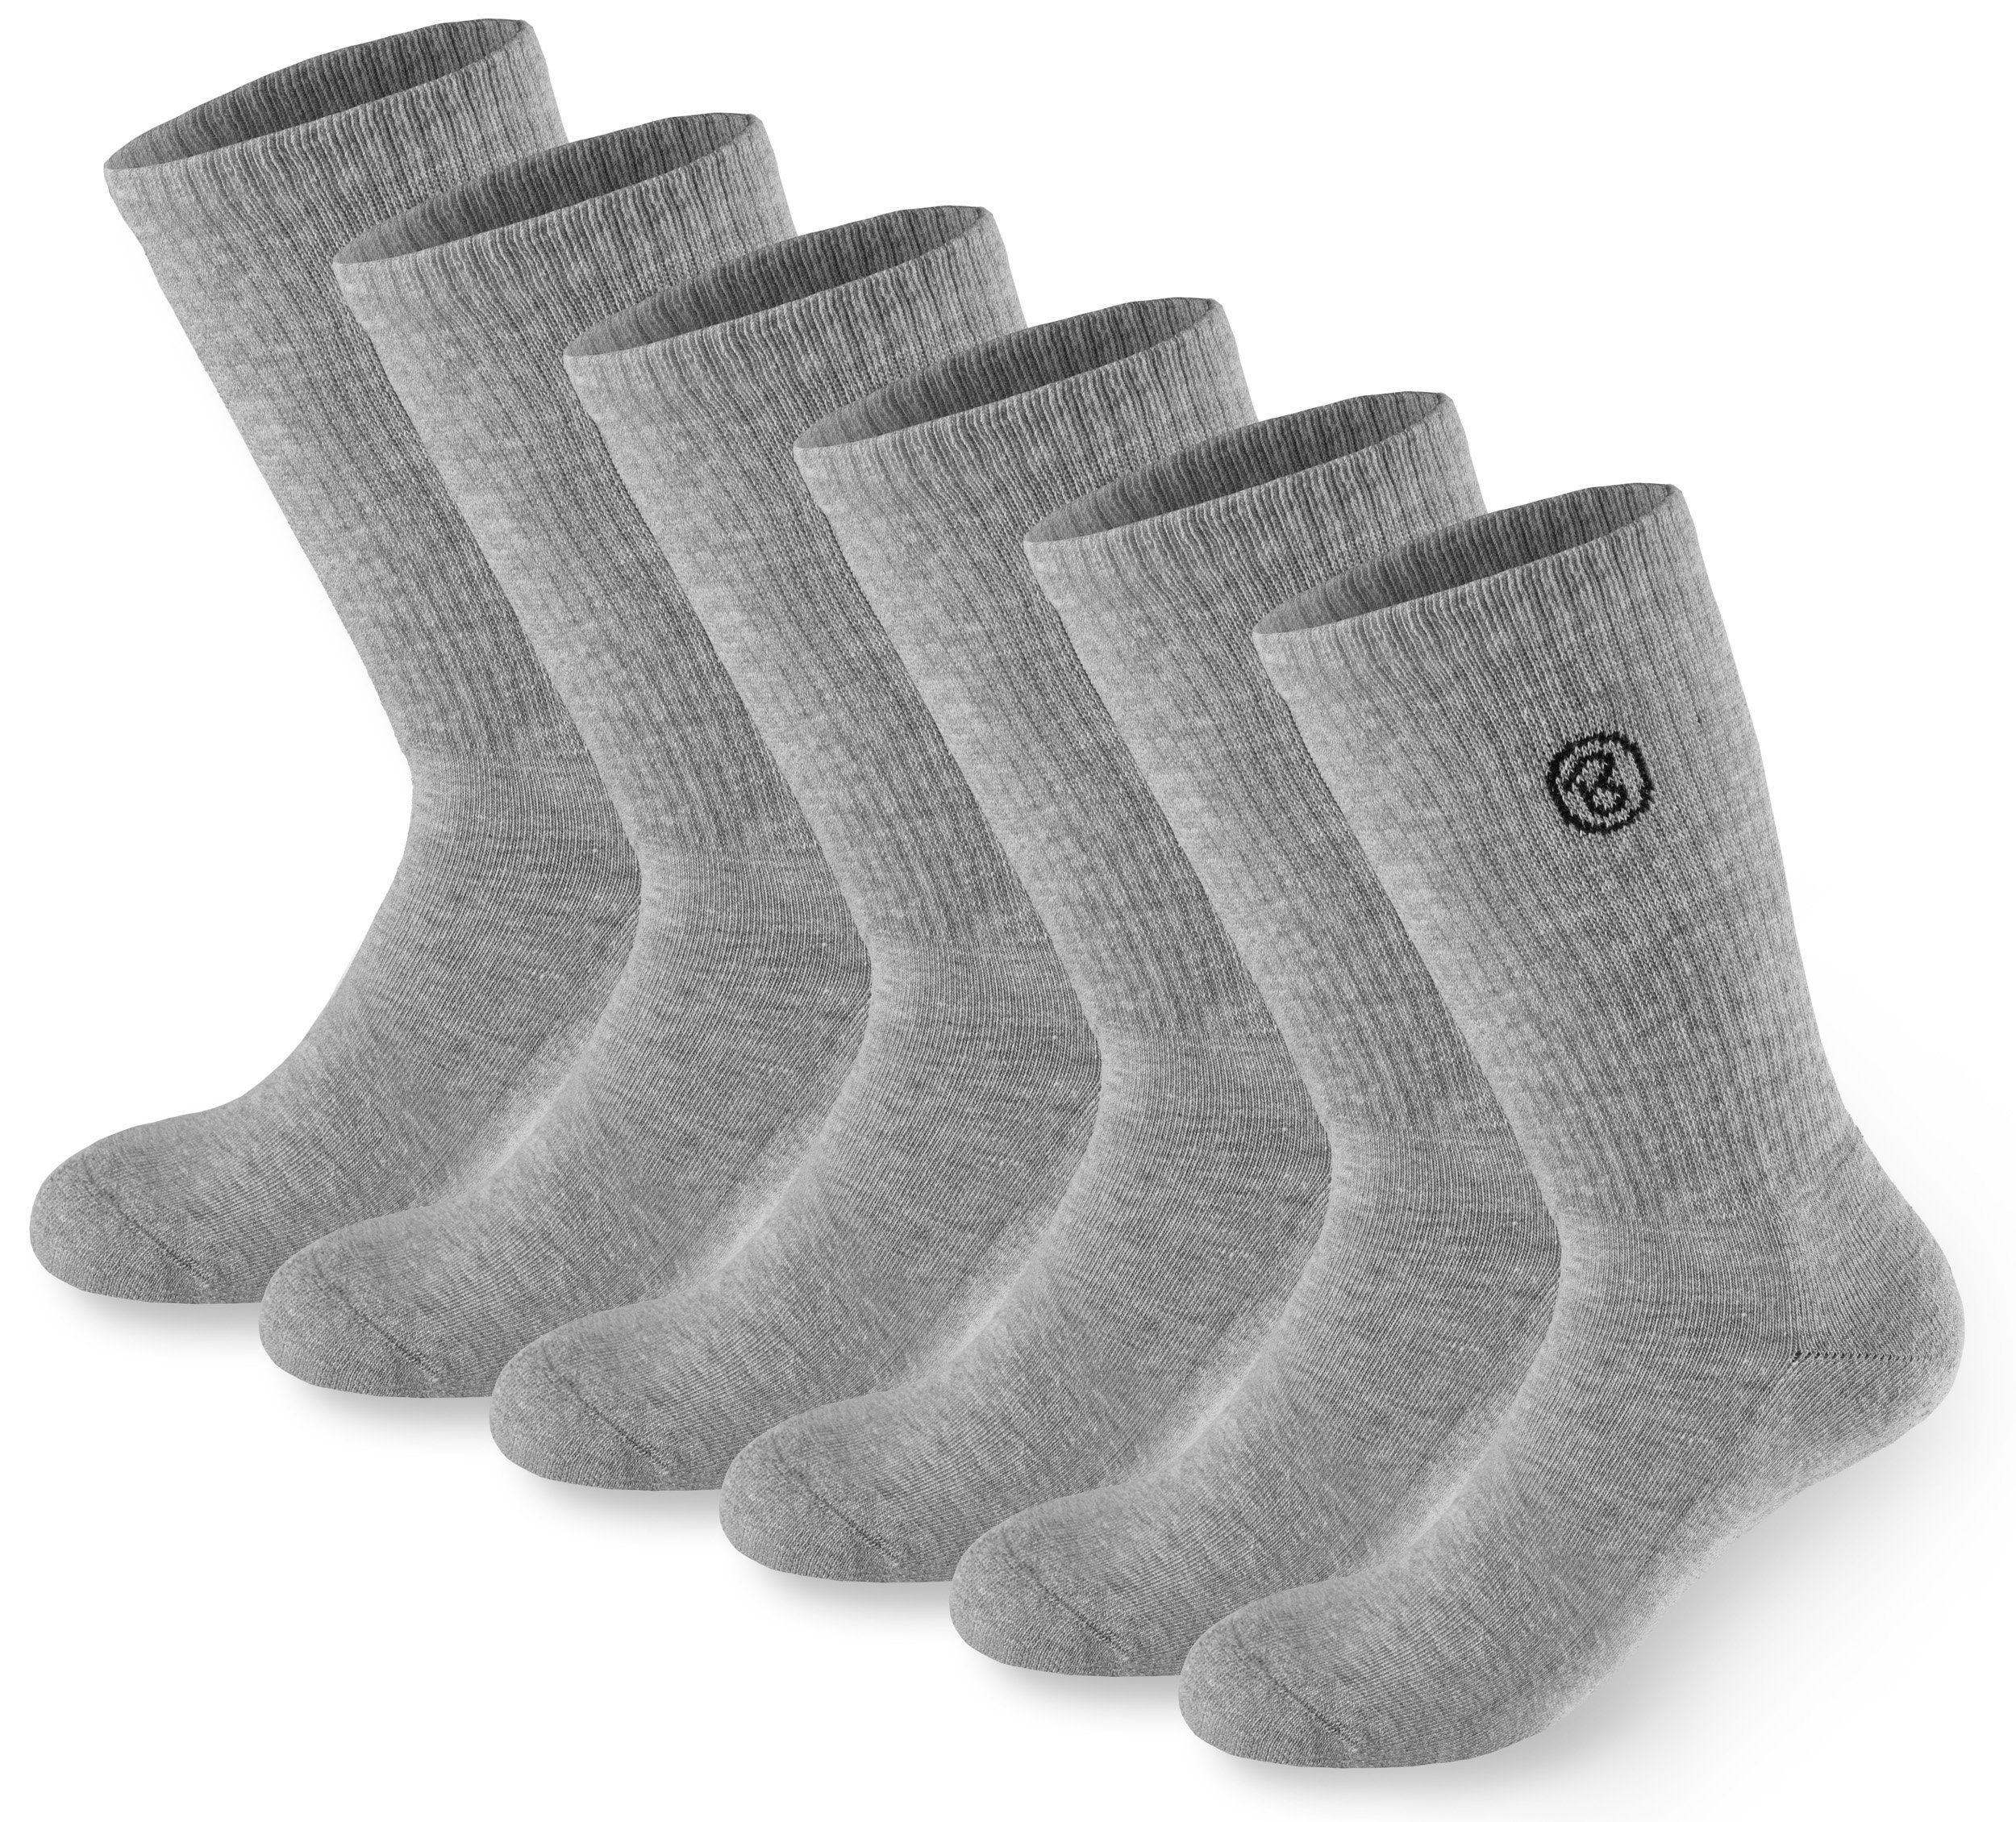 BRUBAKER Tennissocken Lange Sportsocken für Herren und Damen (Set, 6 Paar) Unisex Fitness Socken aus Baumwolle und Polyester - Crew Socks - Baumwollsocken Grau